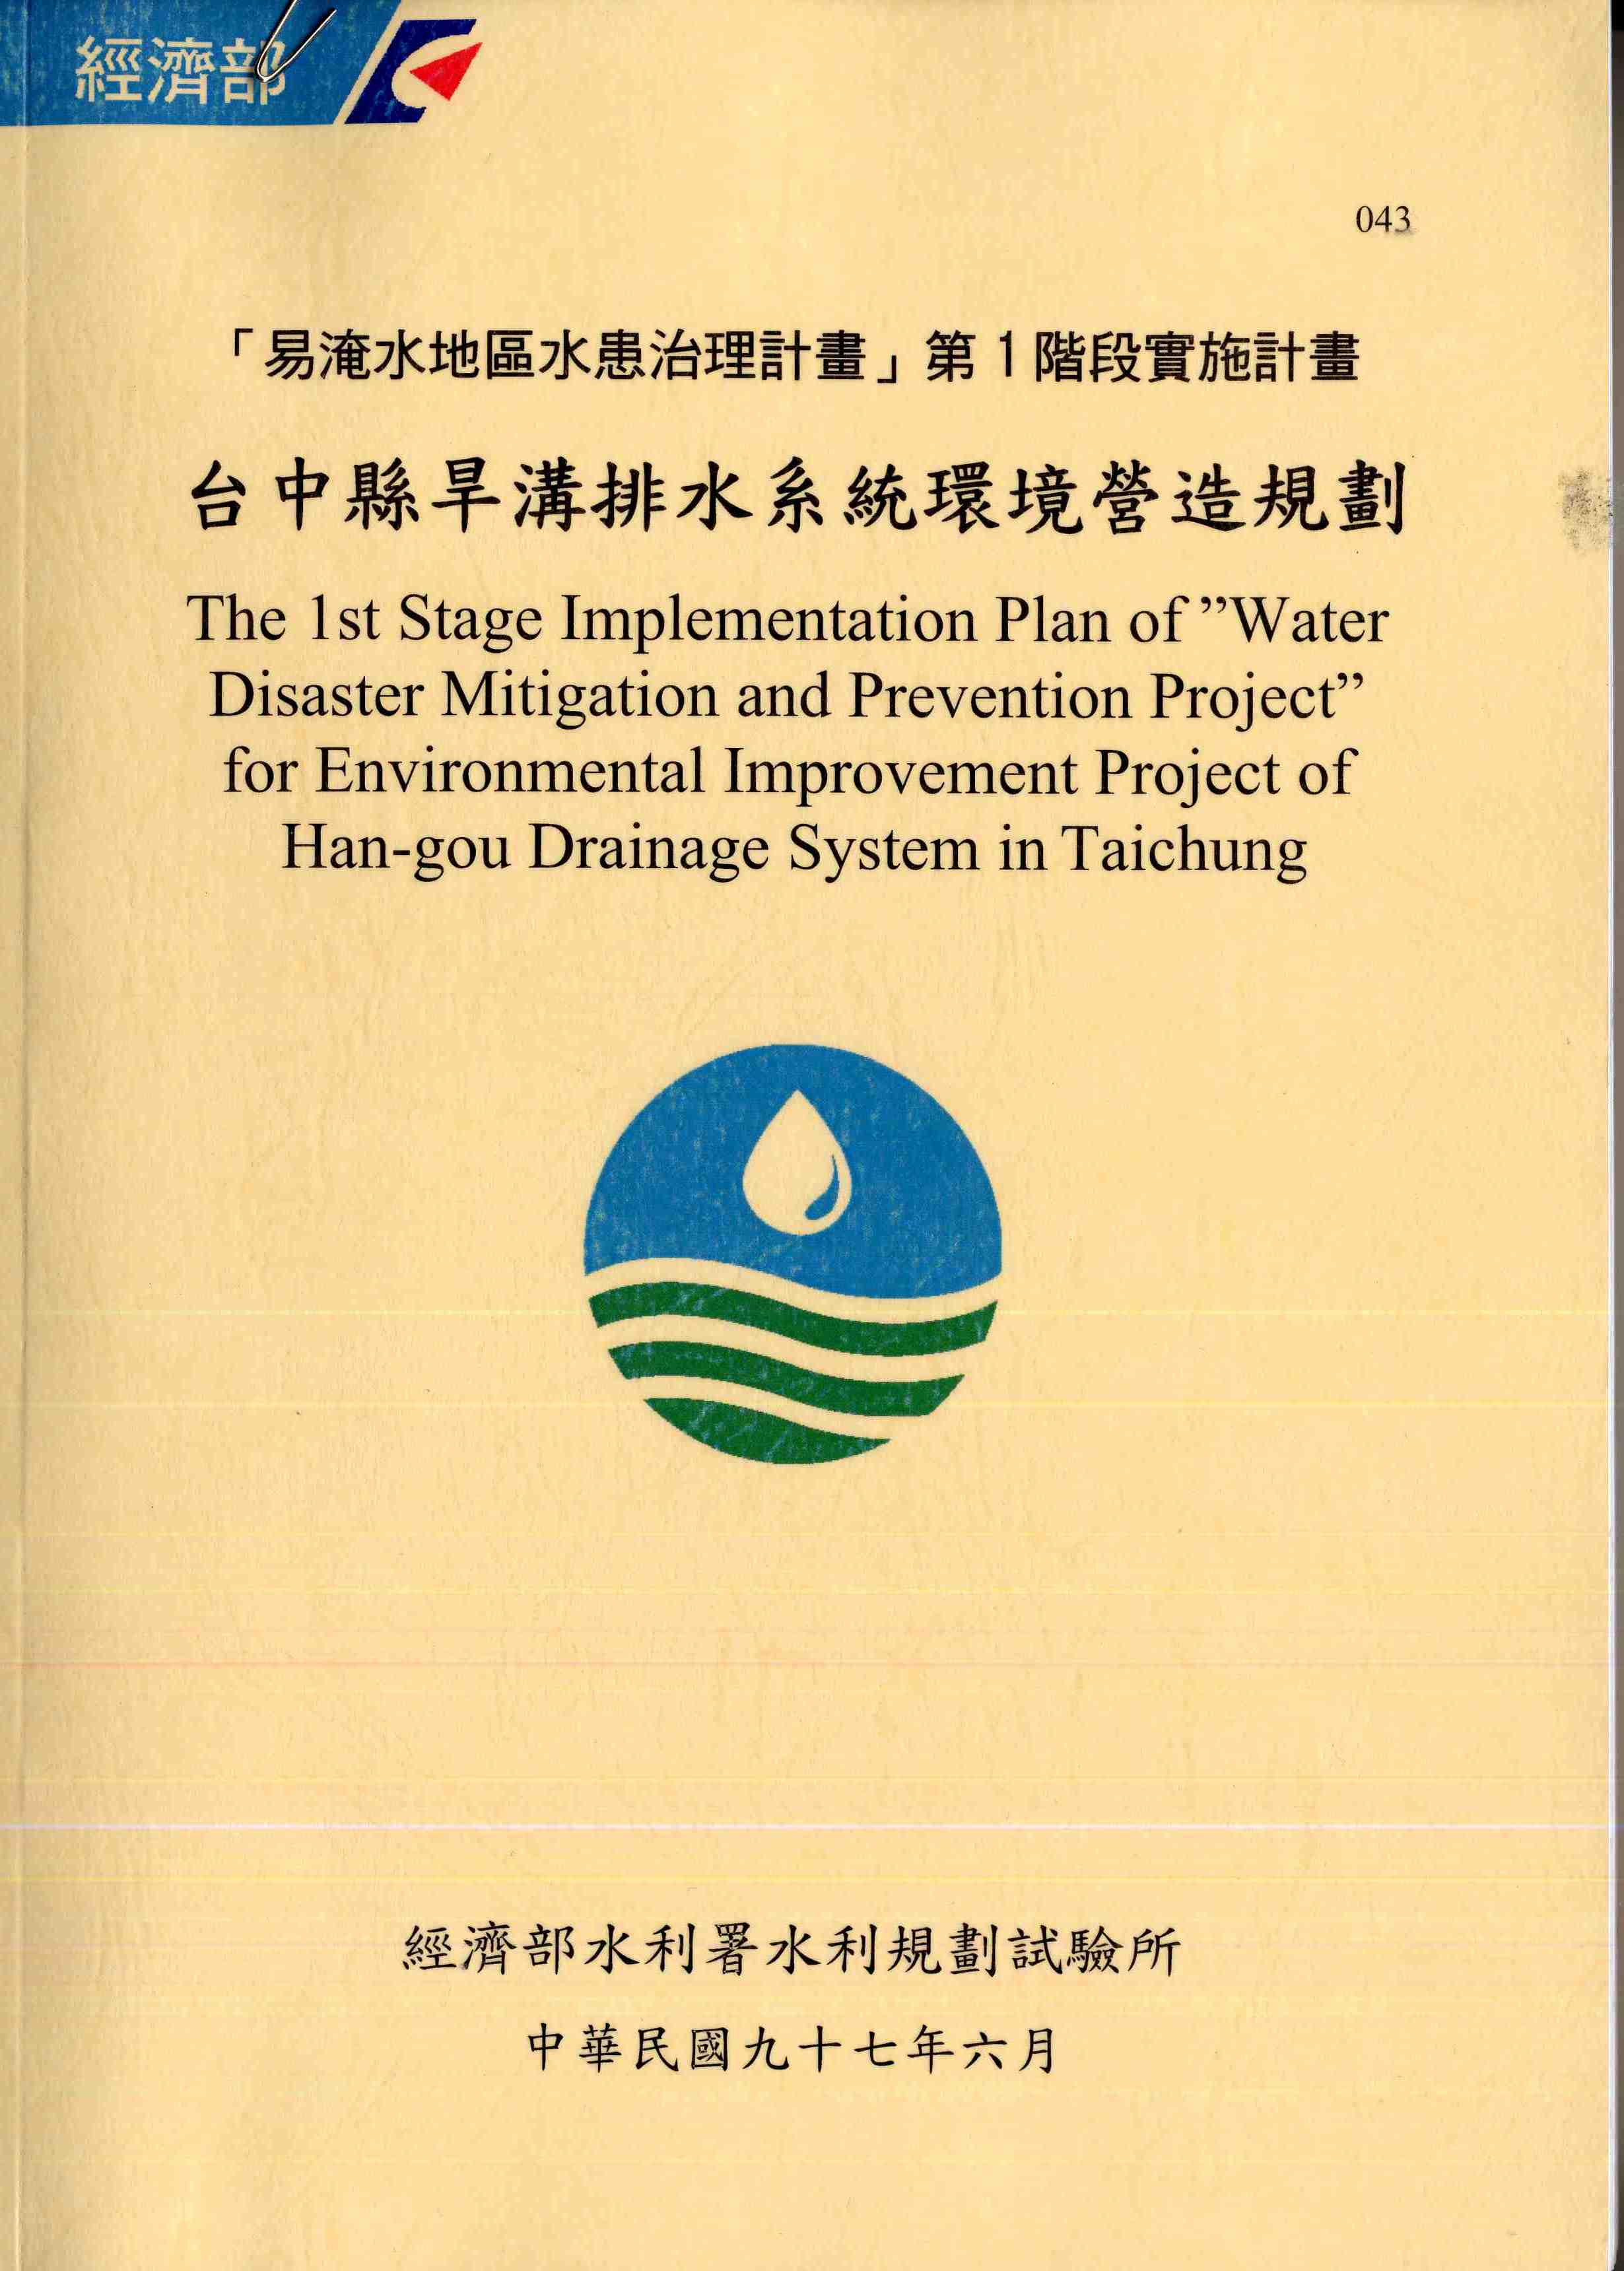 「易淹水地區水患治理計畫 」第一階段實施計畫─台中縣旱溝排水系統環境營造規劃